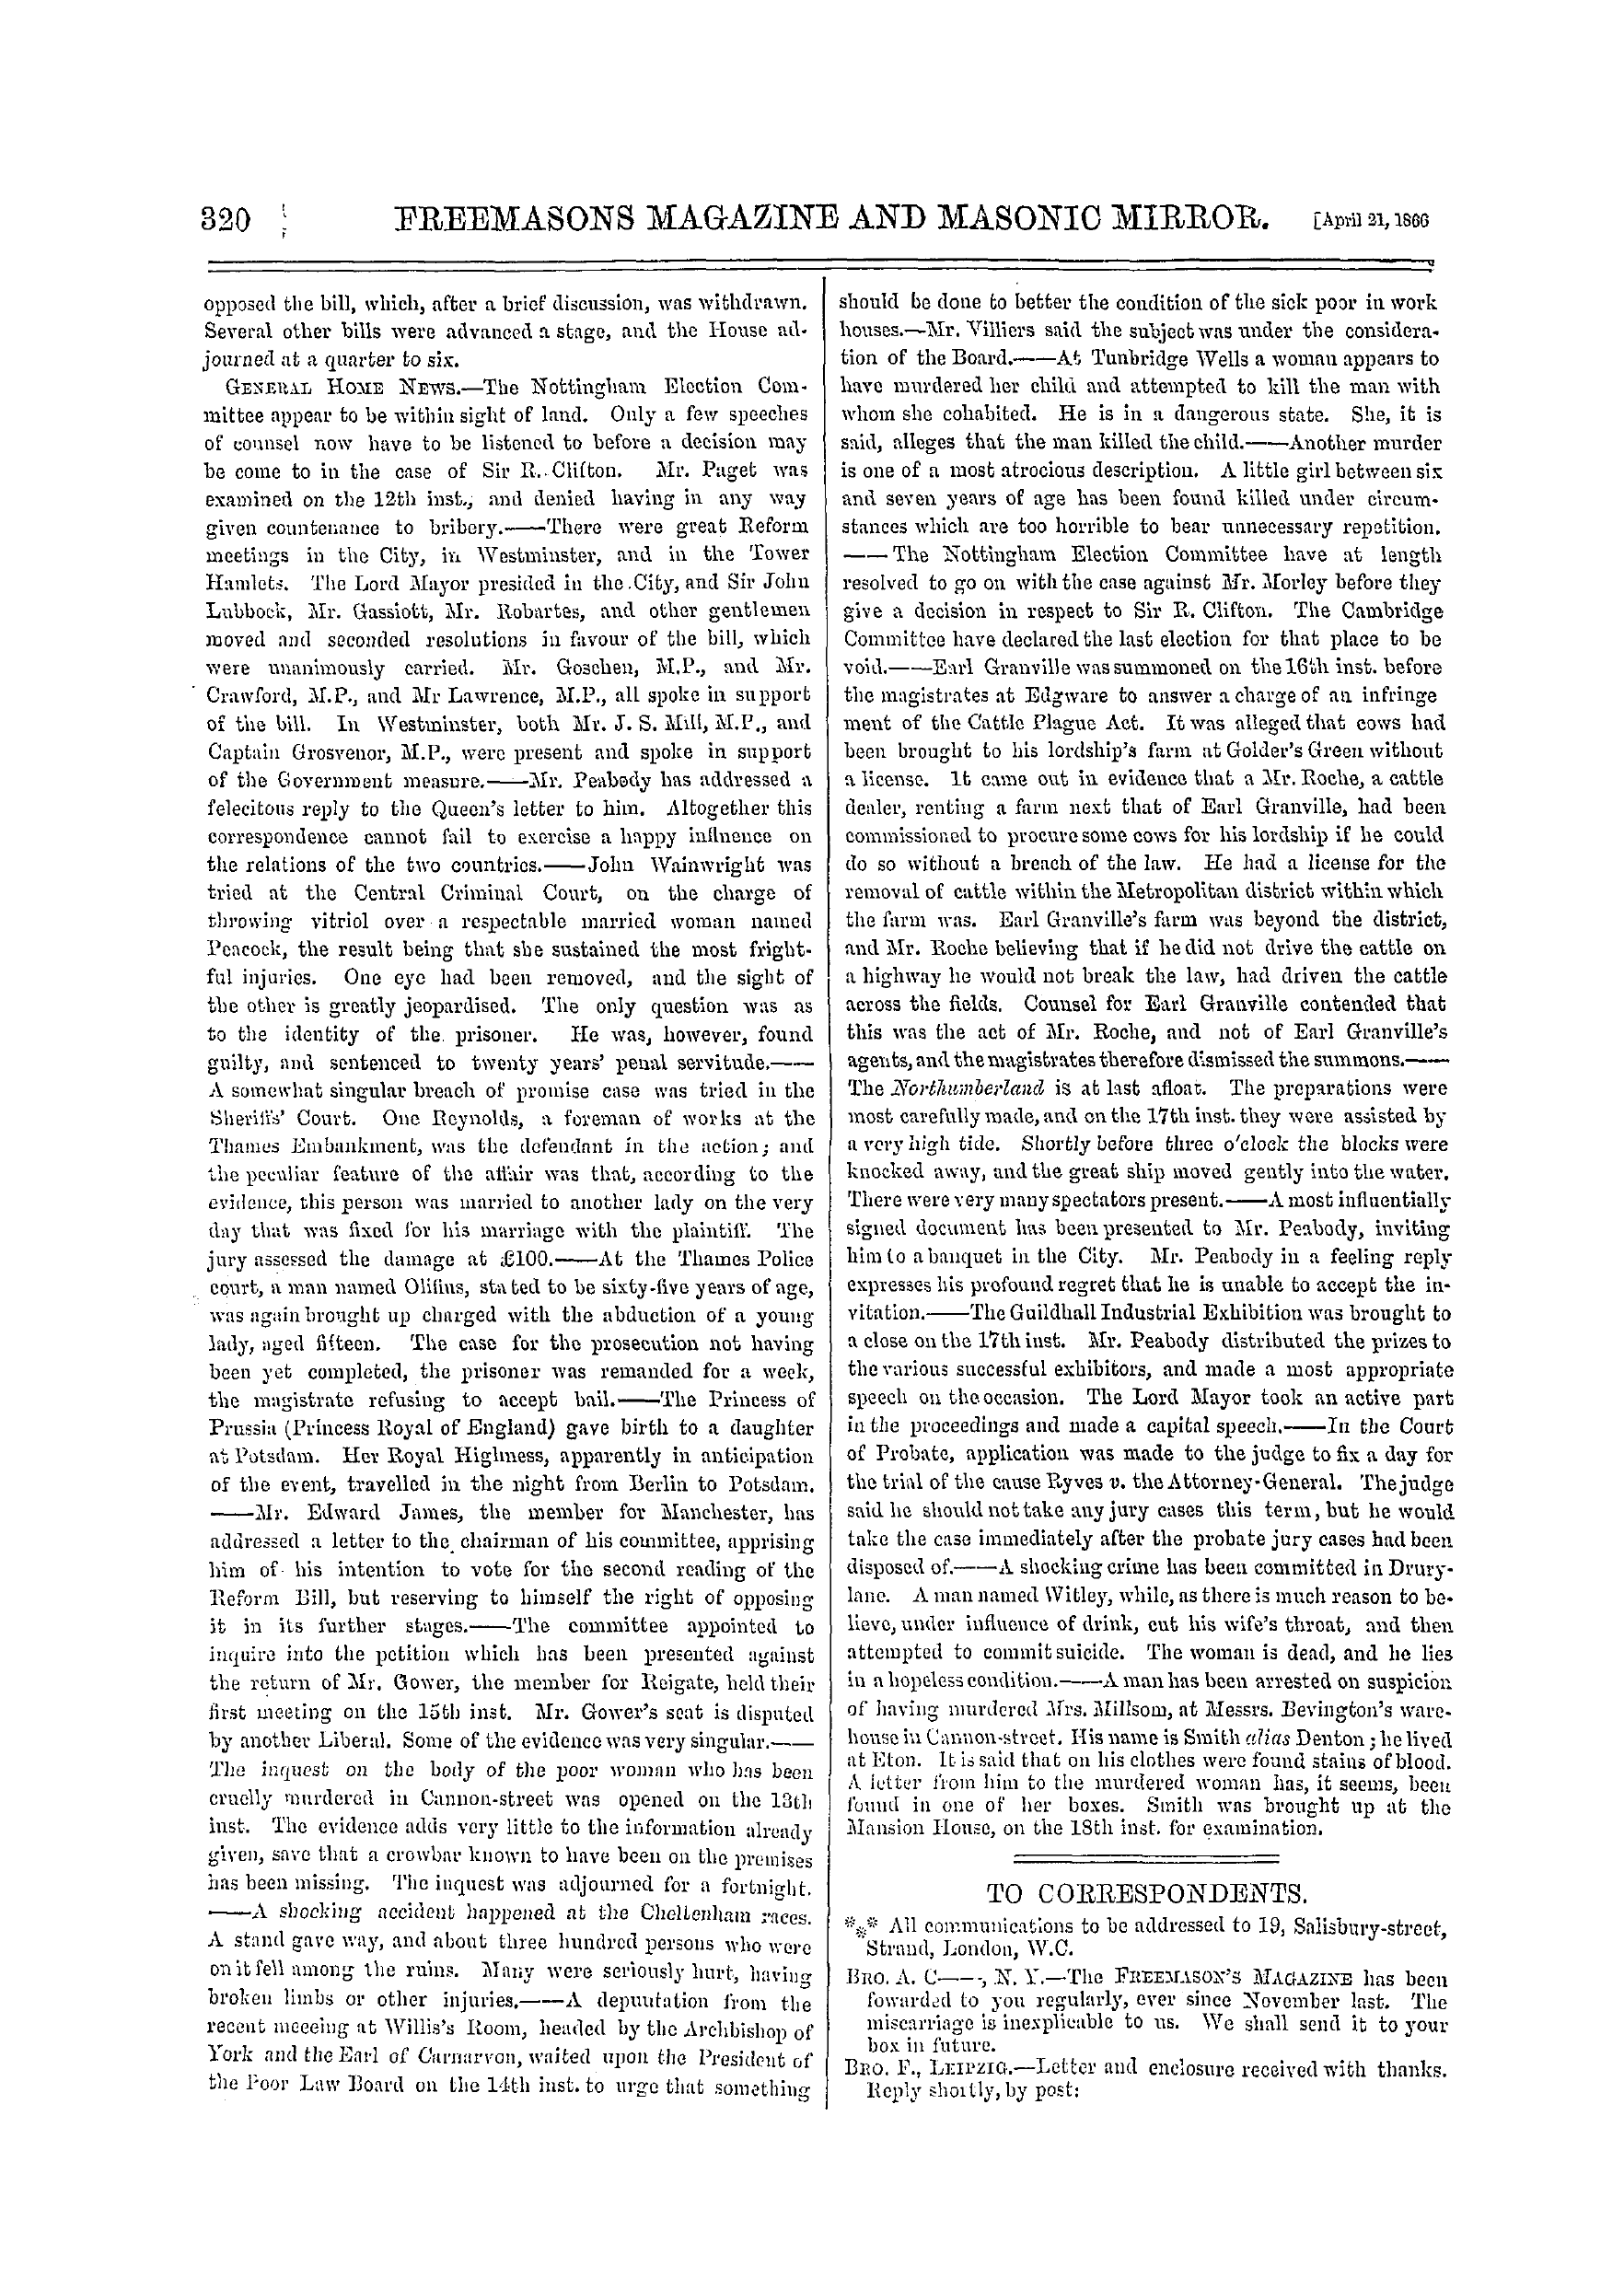 The Freemasons' Monthly Magazine: 1866-04-21 - To Correspondents.